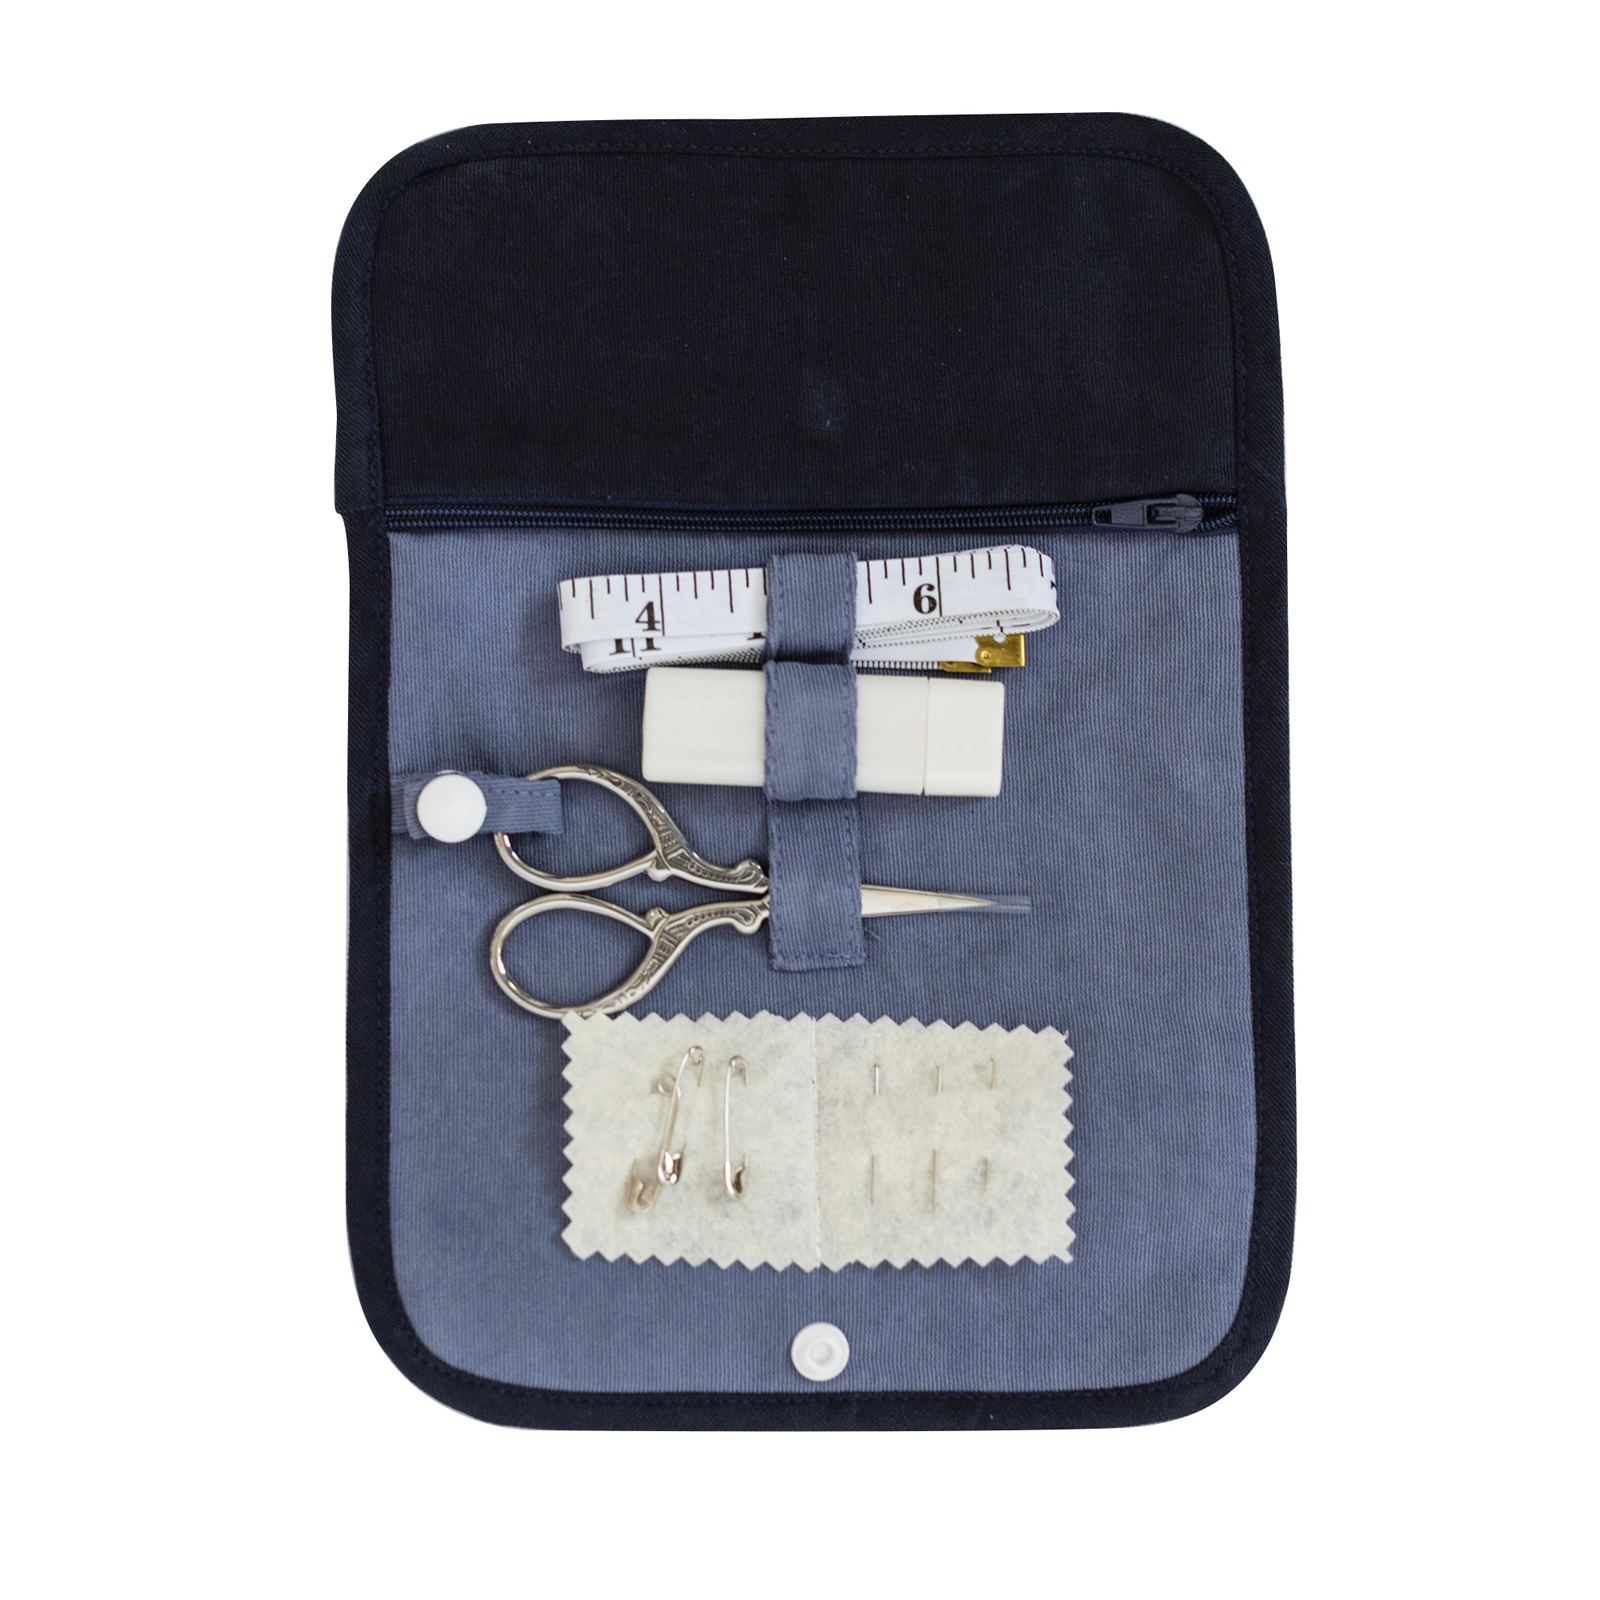 Blue corduroy sewing kit